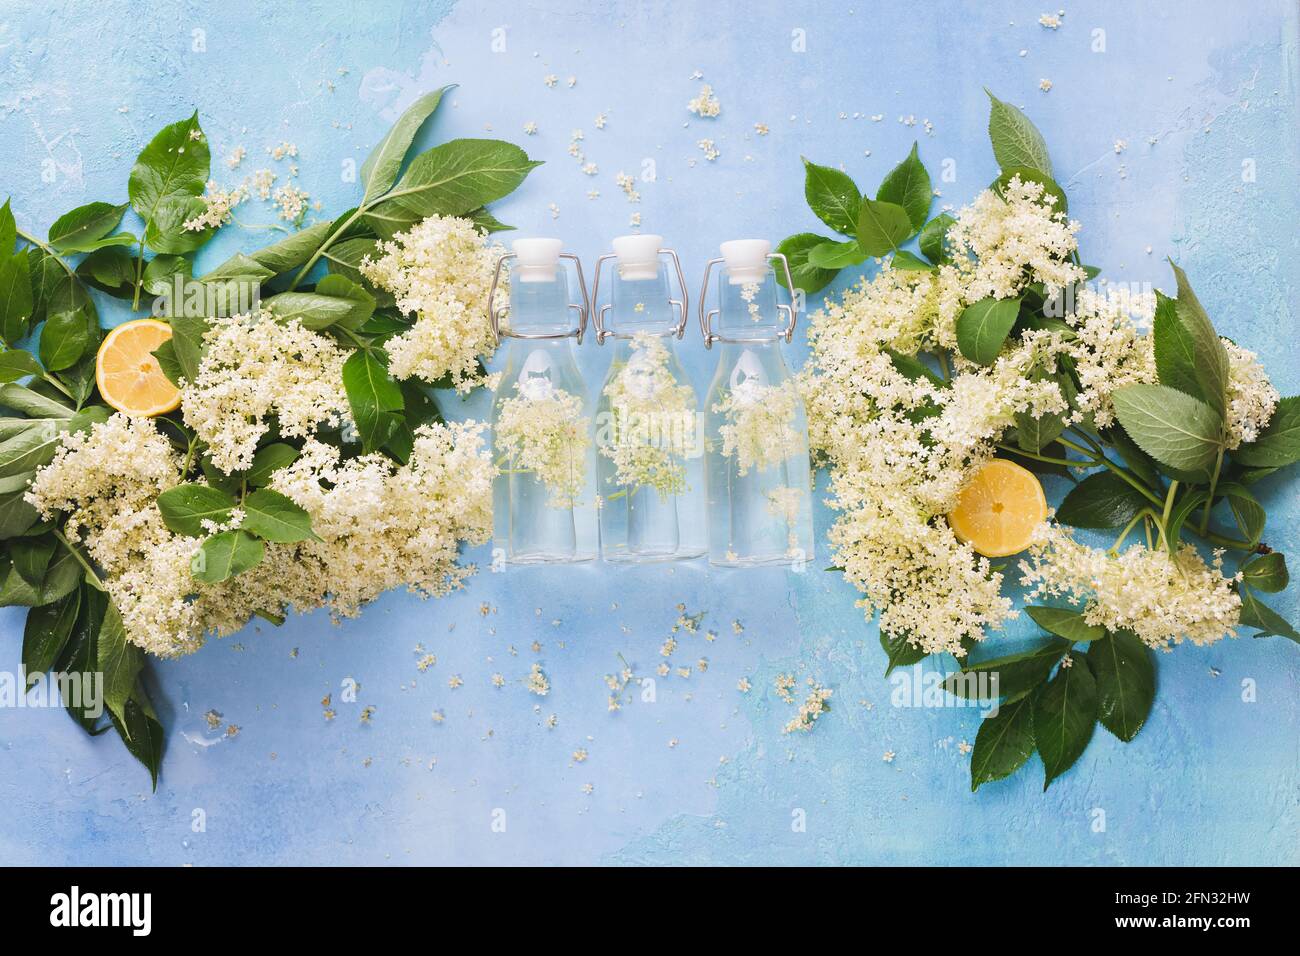 Ingredients to Make Elderflower Liqueur, Elderflower cordial in small bottles on rustic white wooden table. Top view, blank space Stock Photo